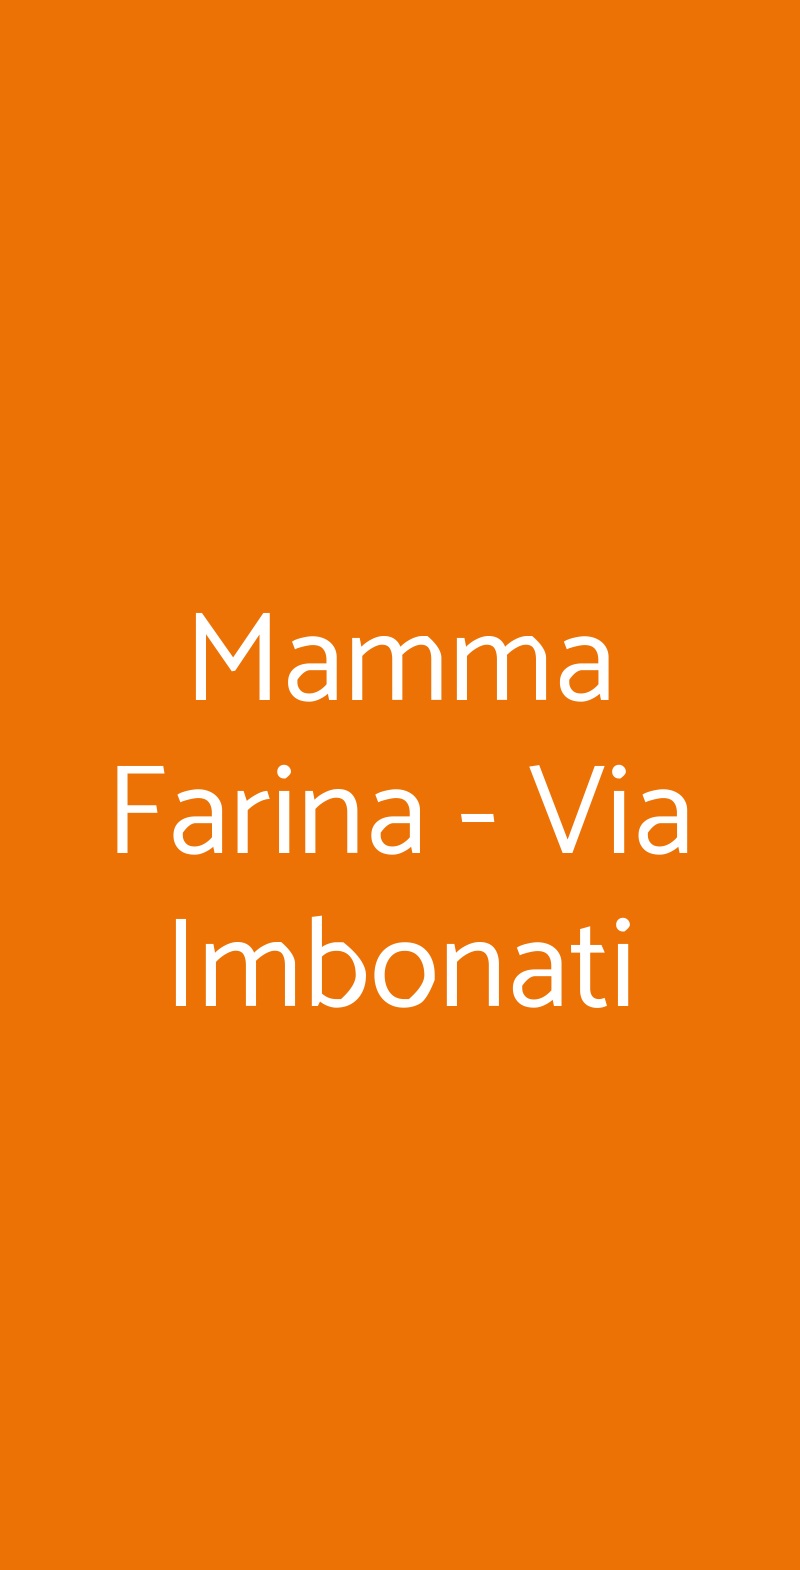 Mamma Farina - Via Imbonati Milano menù 1 pagina